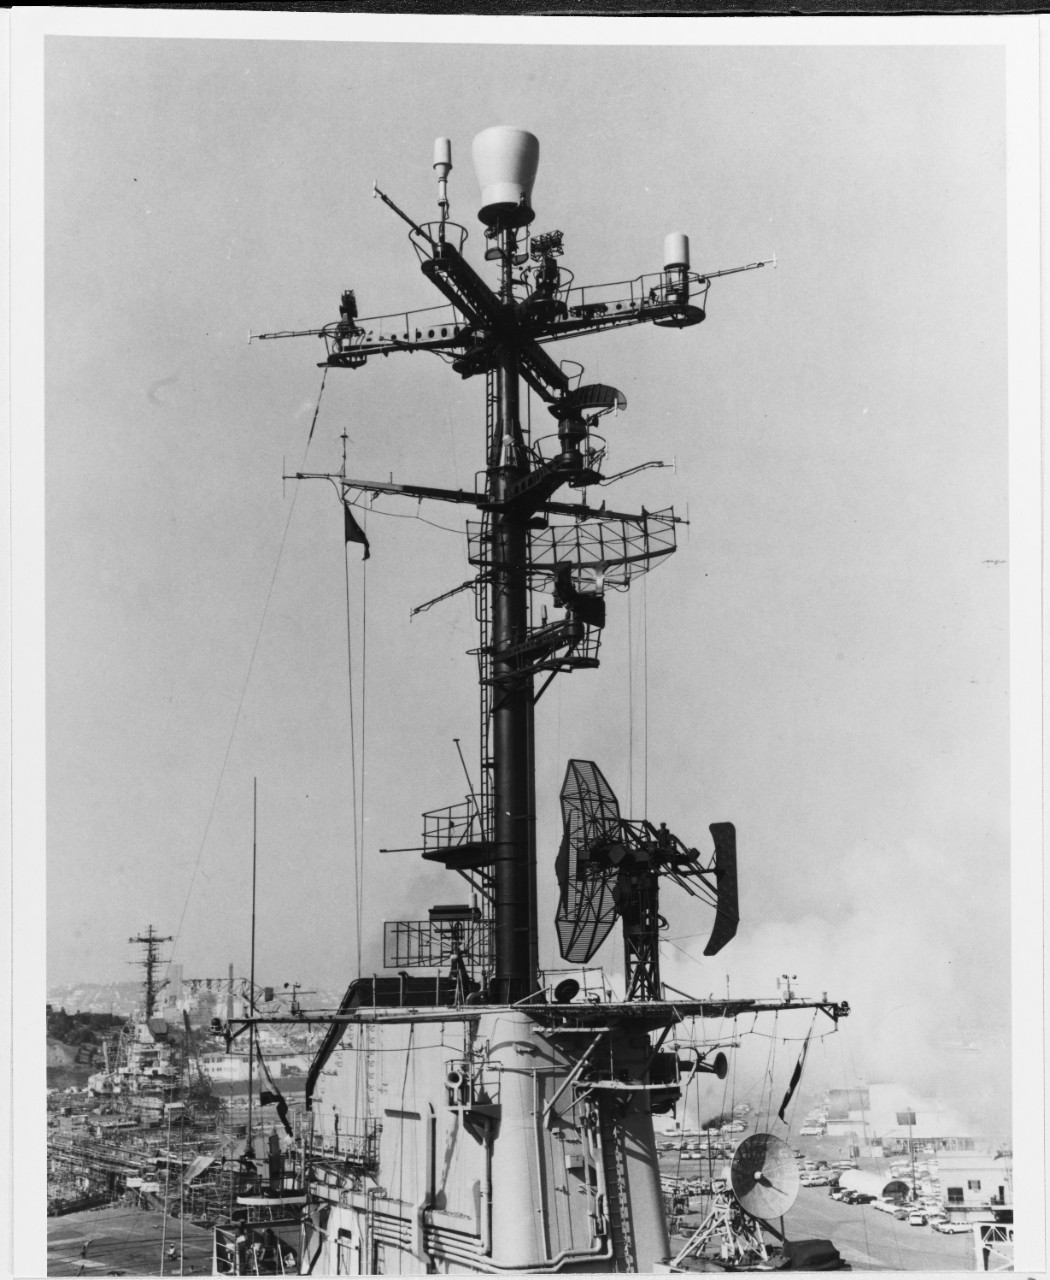 USS BENNINGTON (CVA-20)